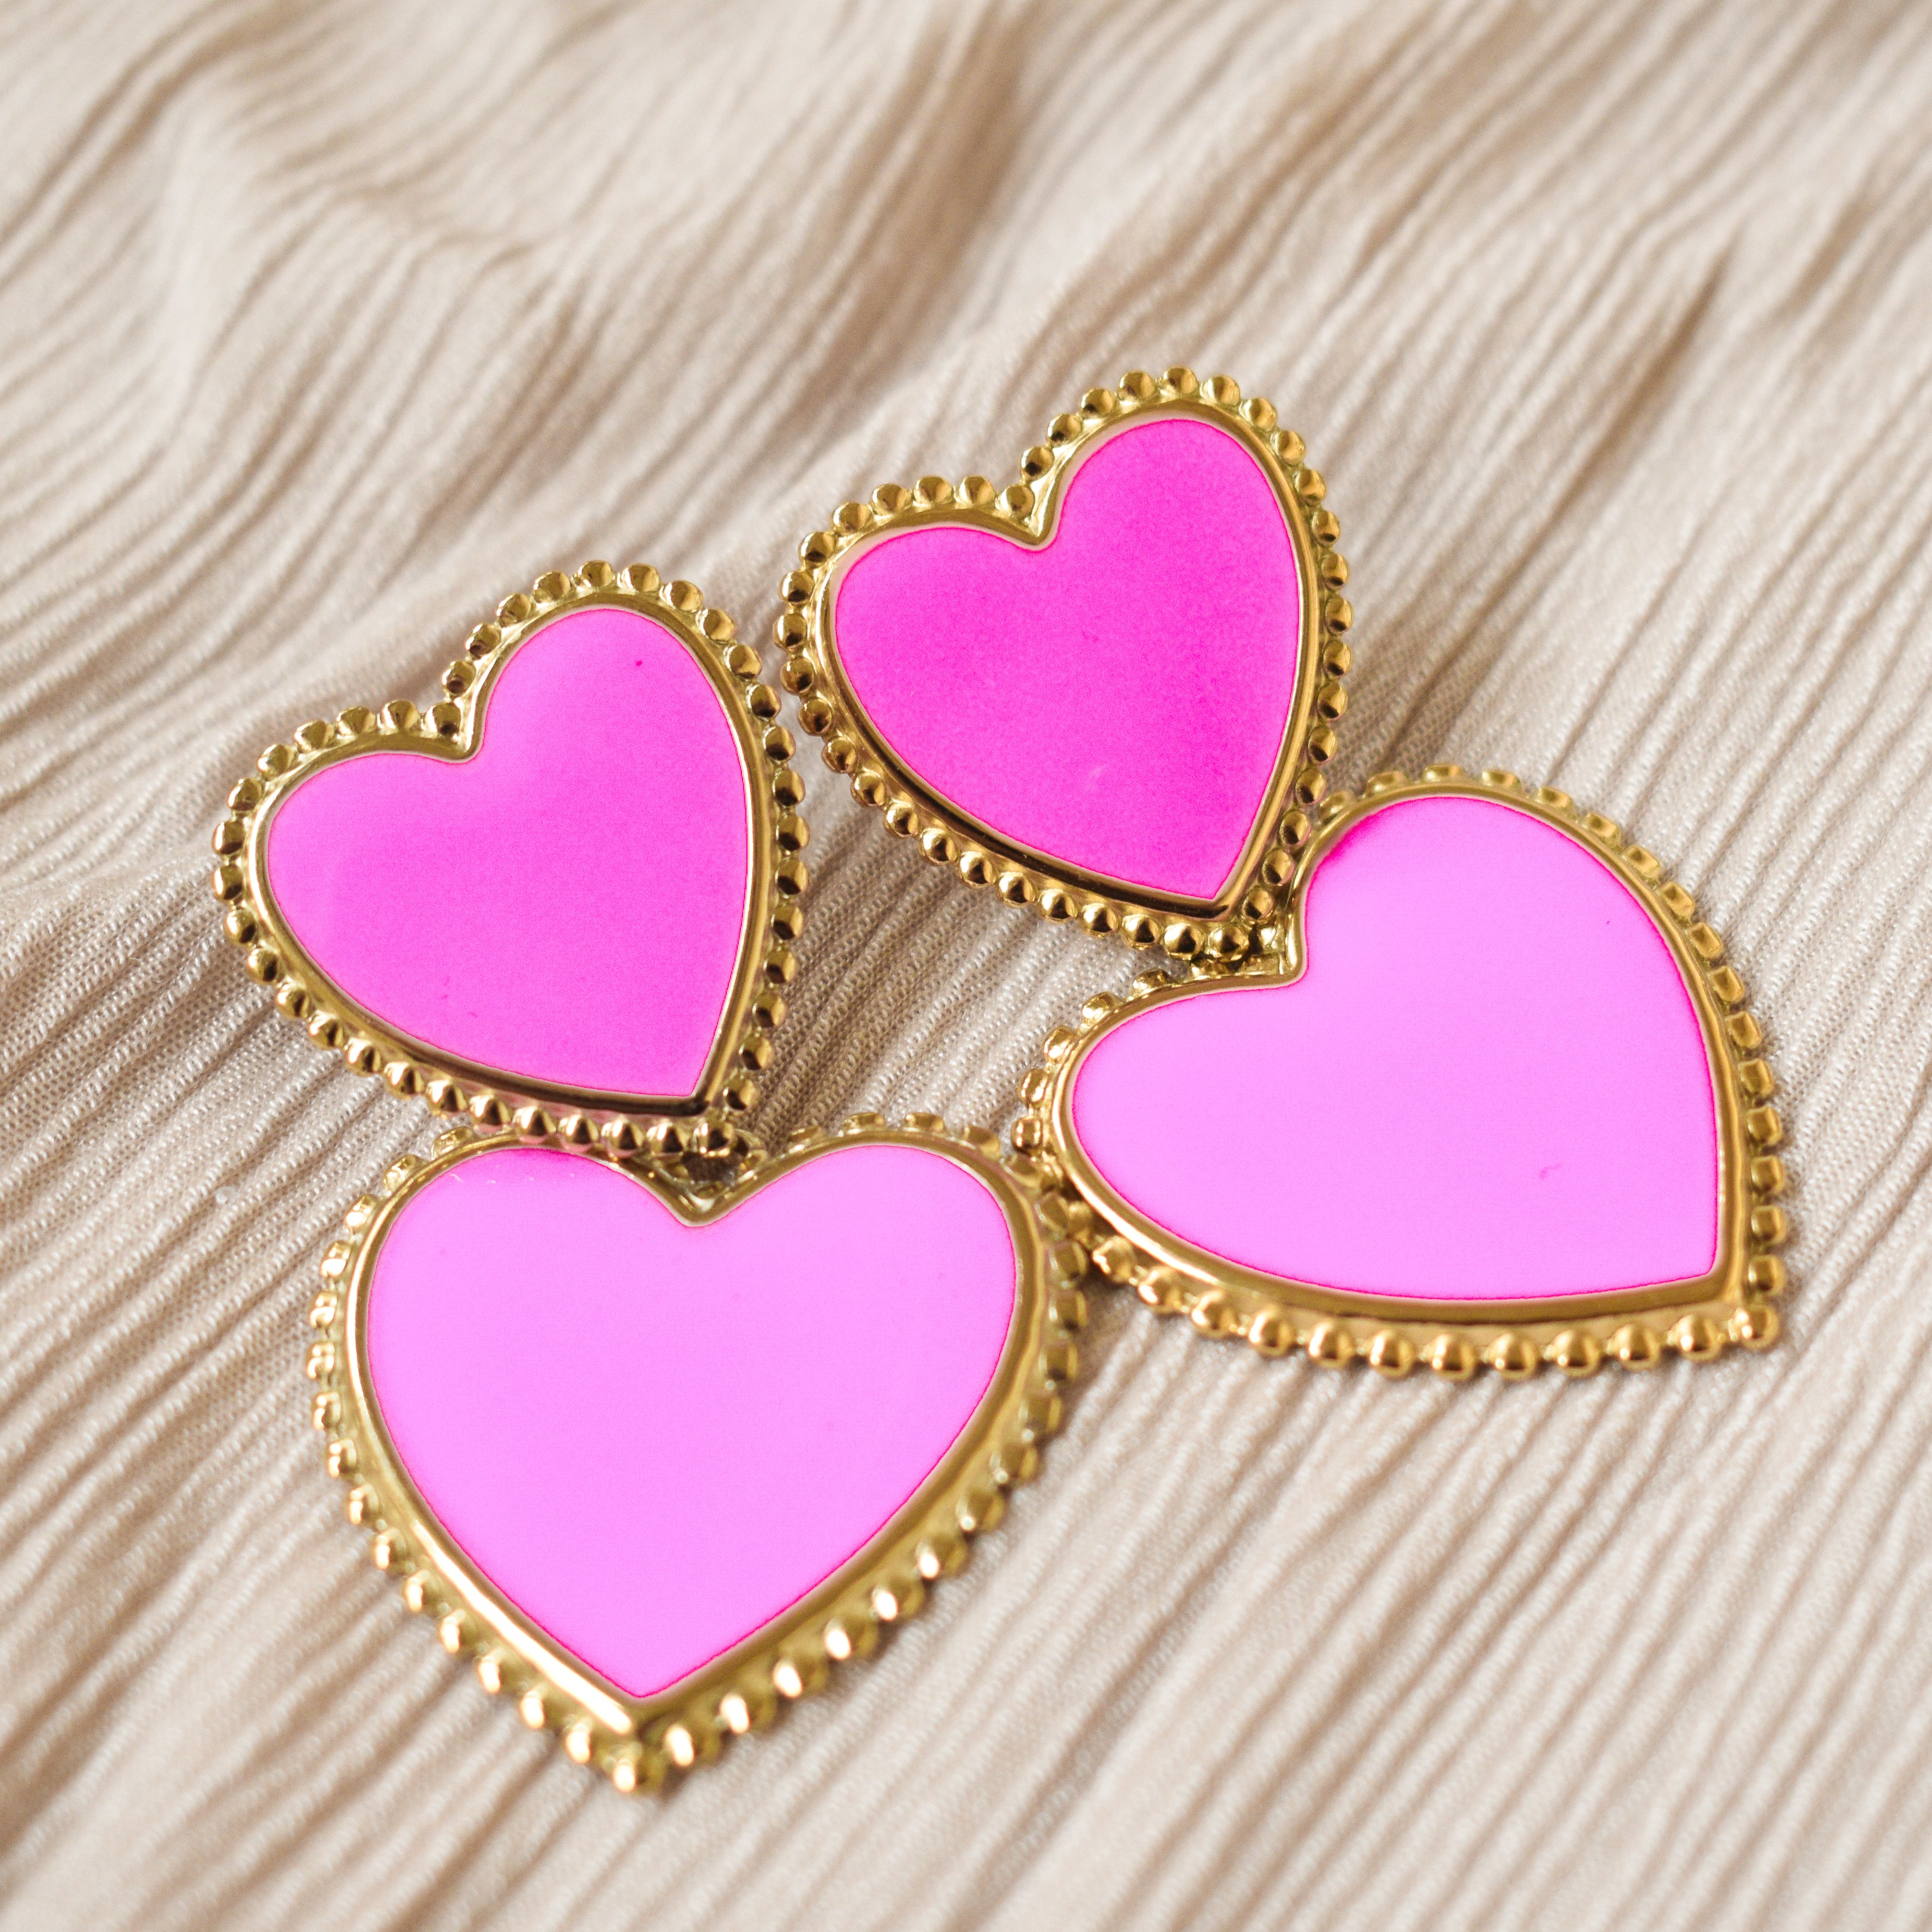 Statement Heart Earrings Pink